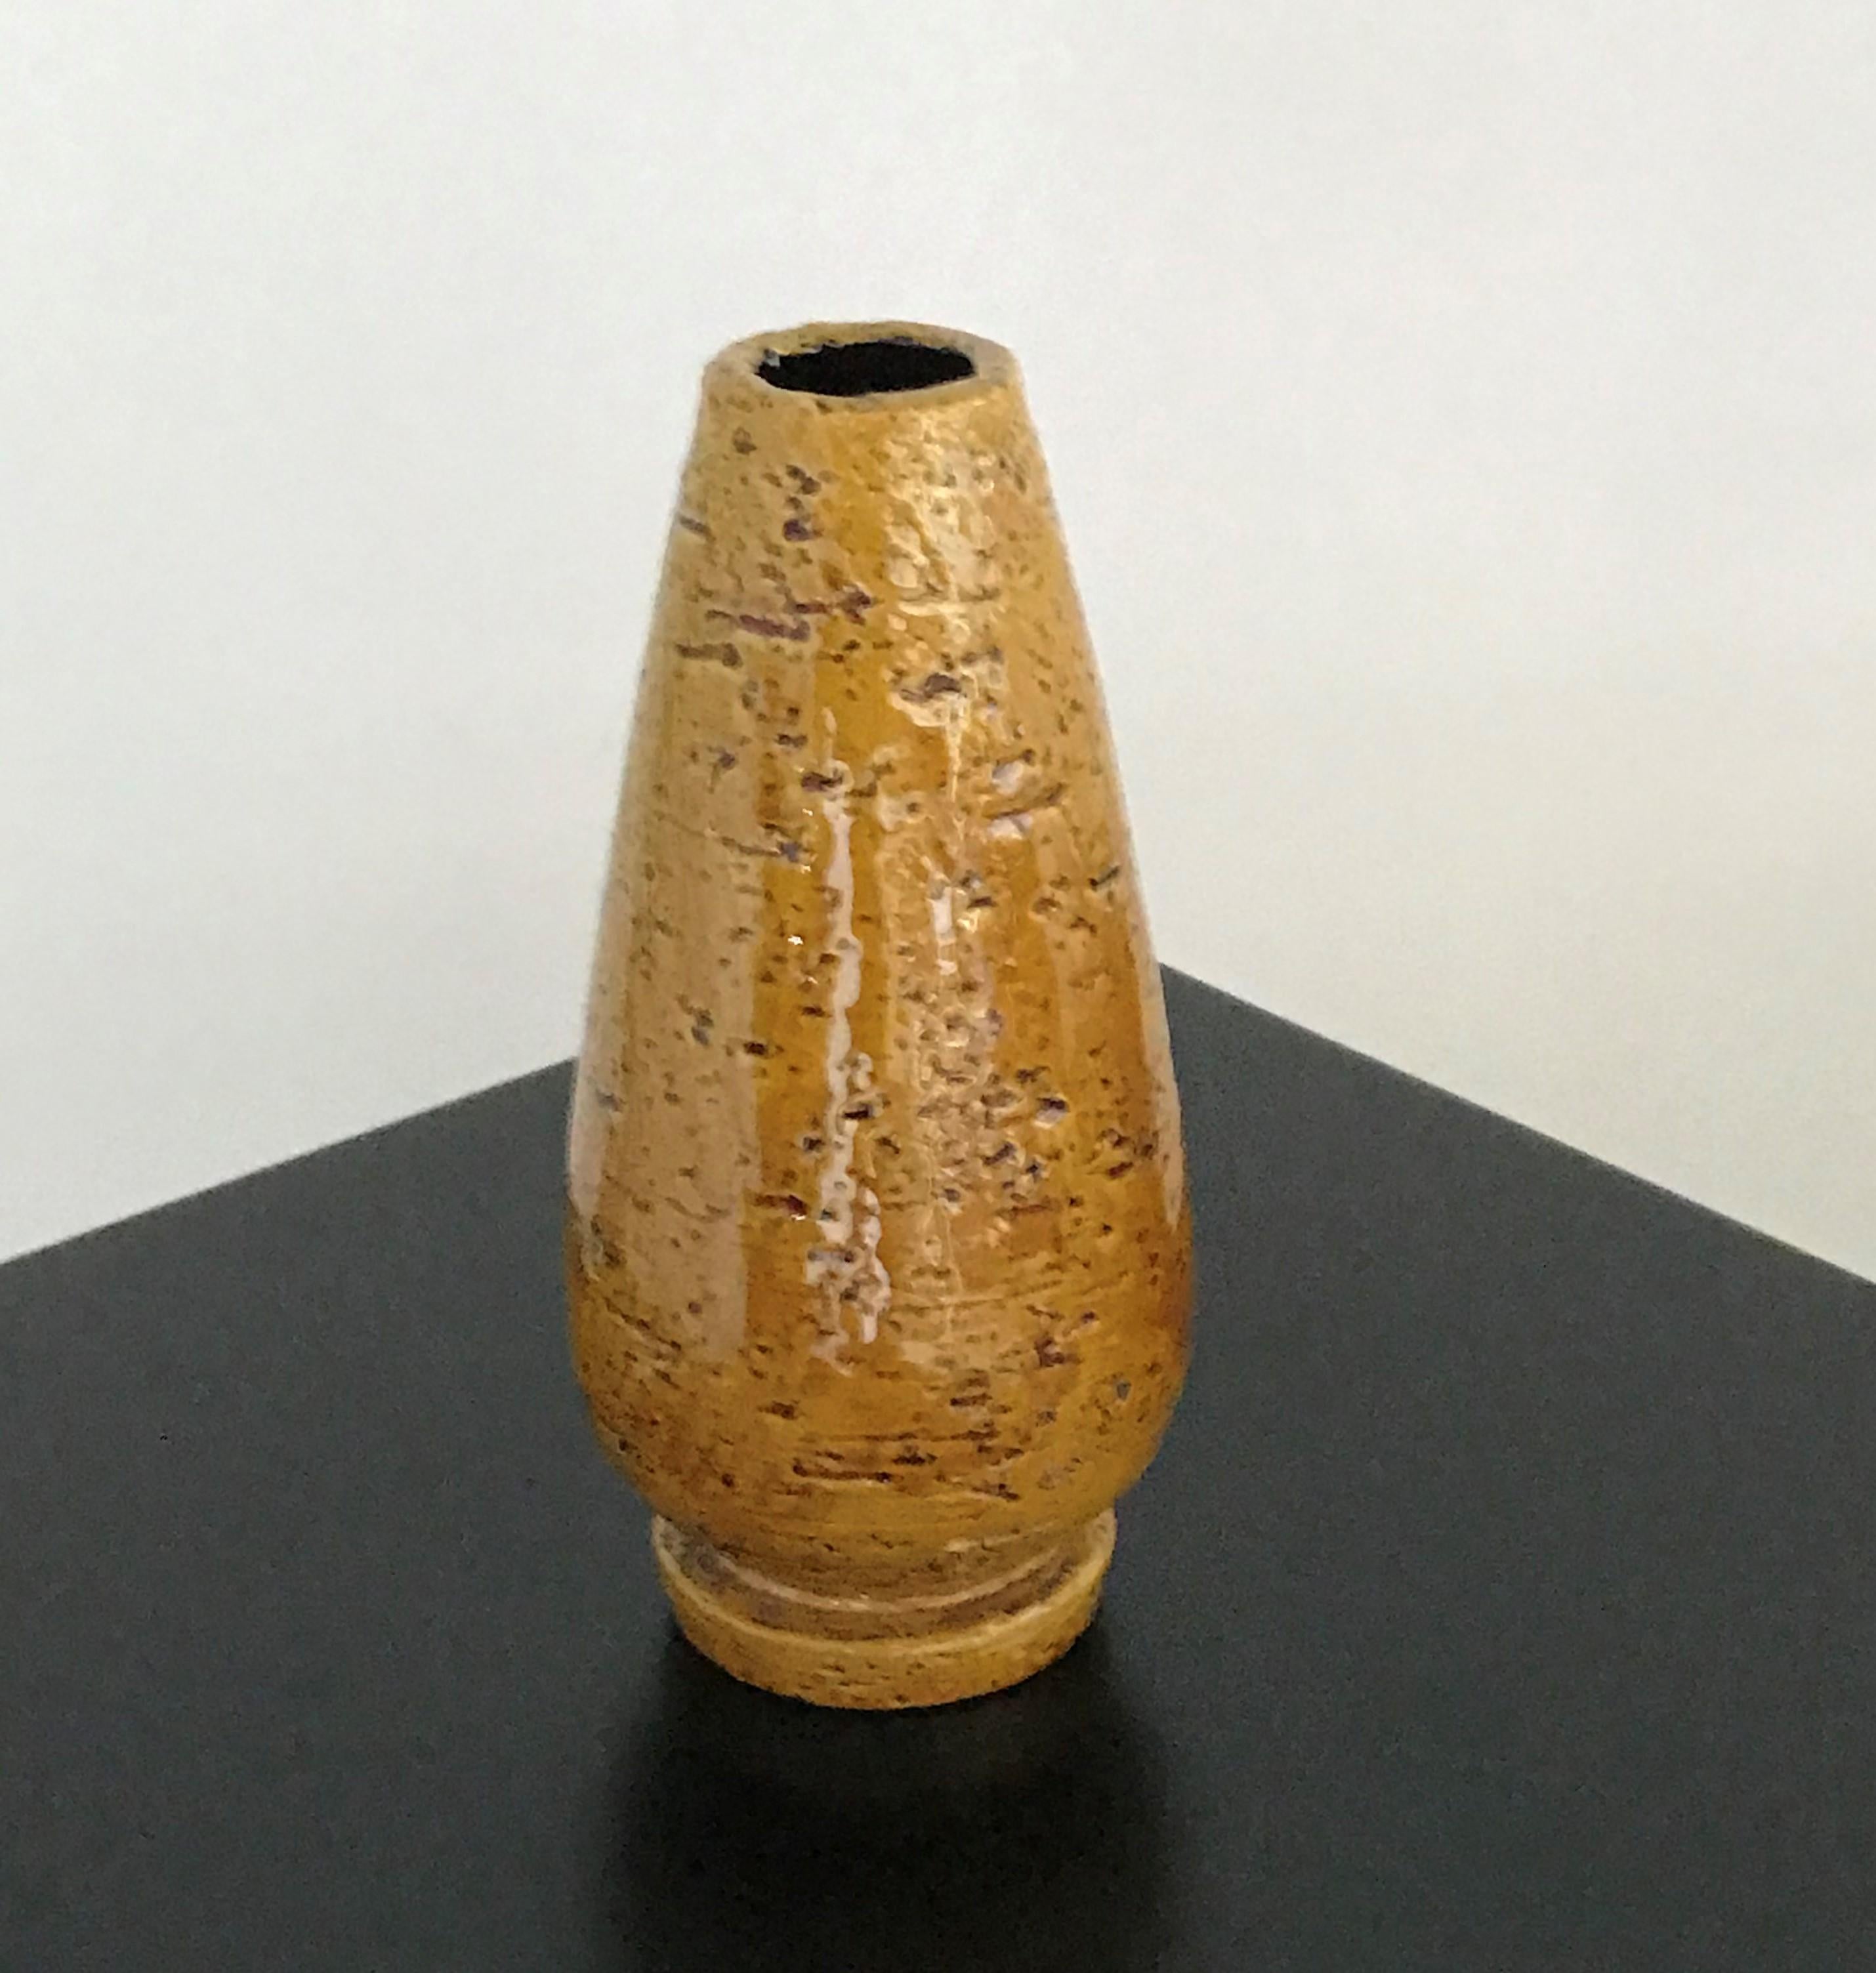 REDUZIERT VON $350...Exquisite Kreation von Gunnar Nylund (1914-1997) während seiner Amtszeit als künstlerischer Leiter von Rörstrand von 1932 bis in die 1950er Jahre. Die Vase hat eine glänzende, würzige, senfgelbe Glasur über einem rauen,